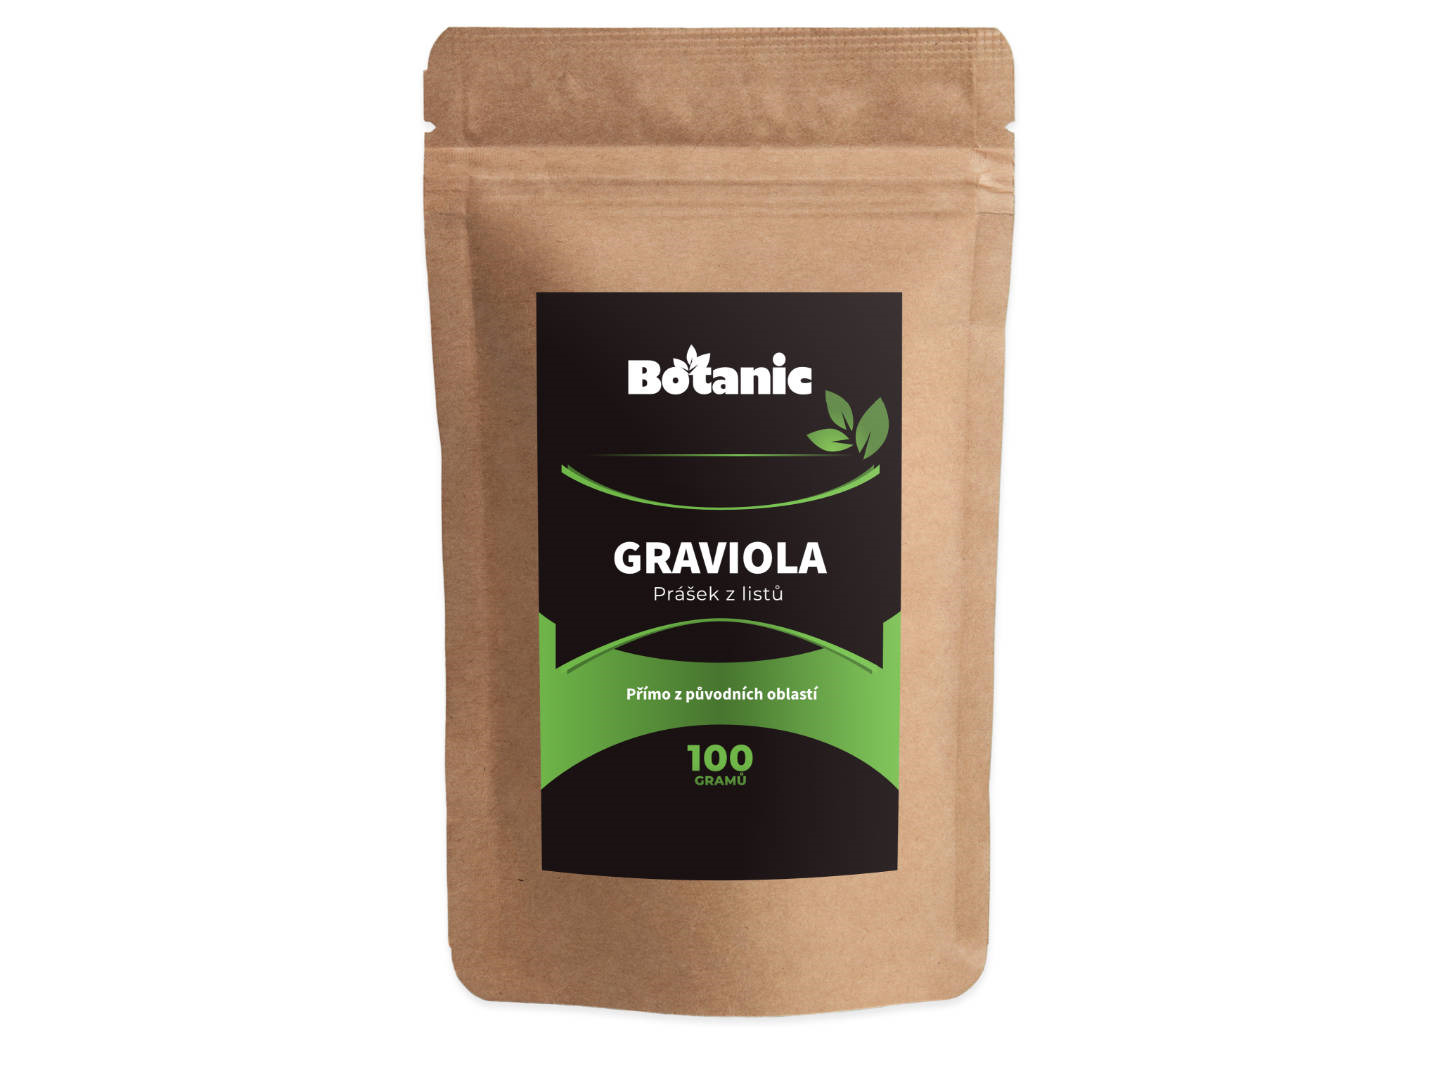 Botanic Graviola 100g